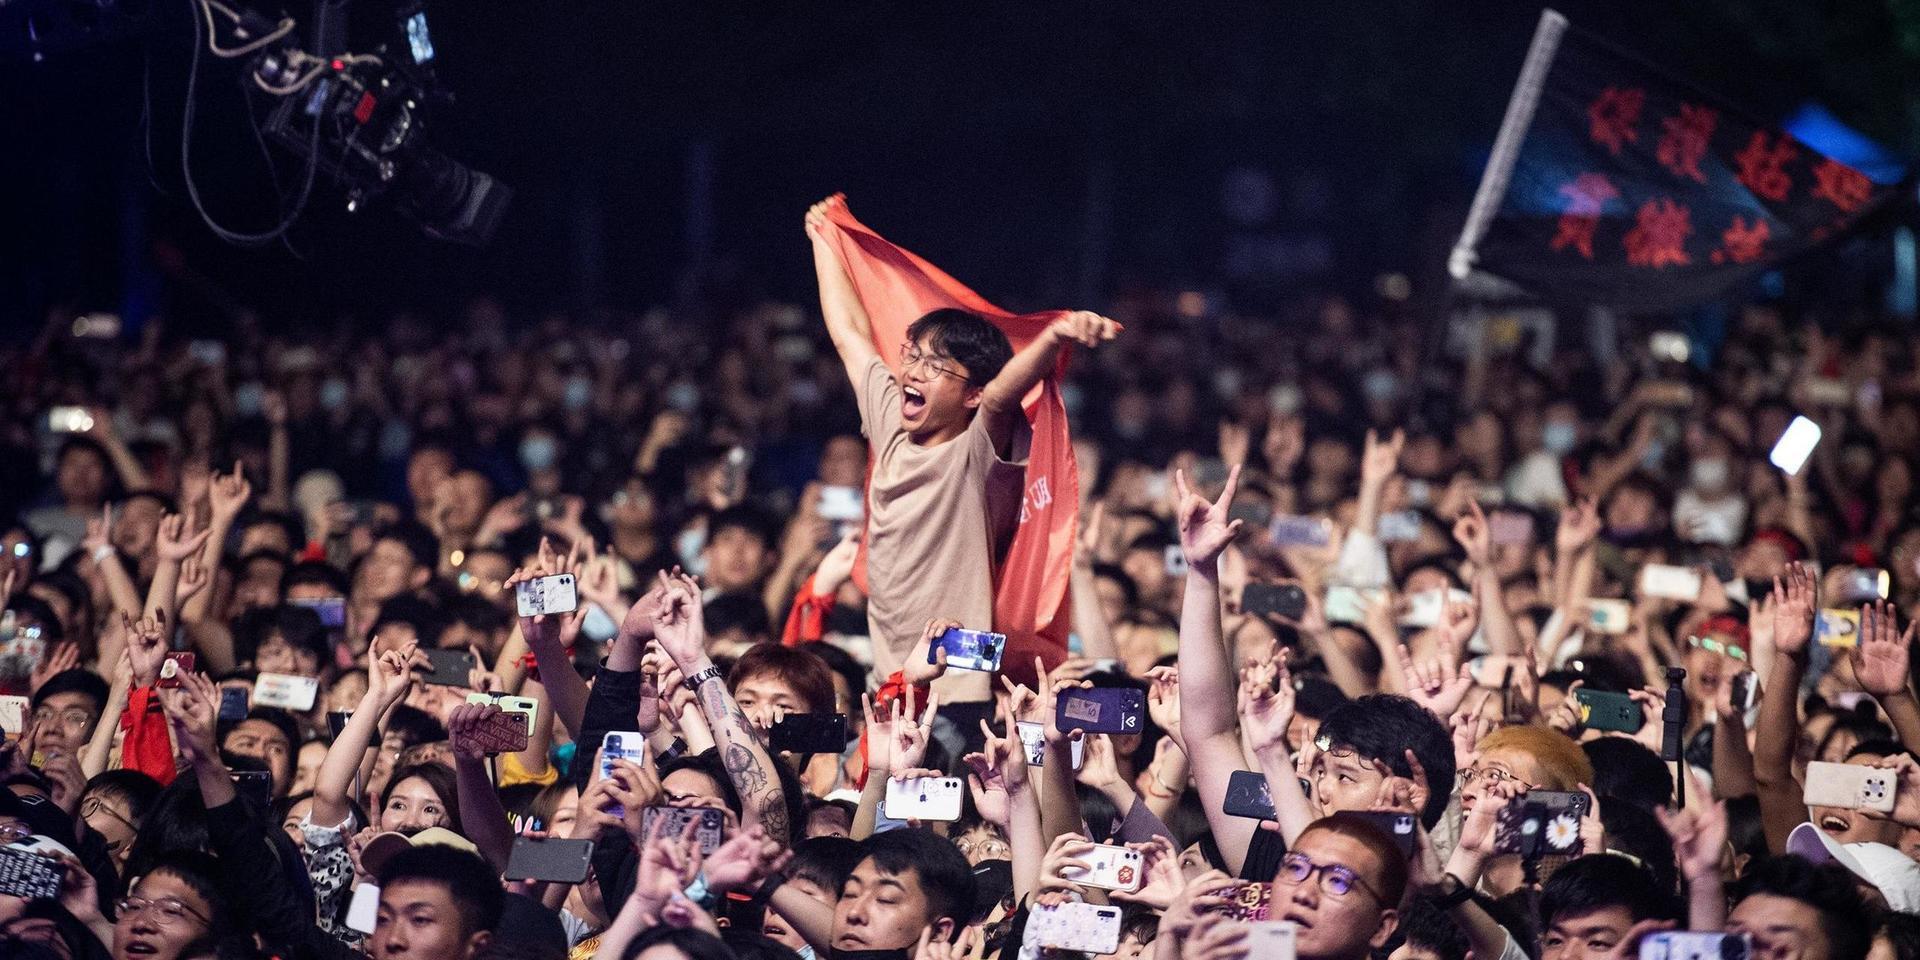 Tusentals människor besökte helgens festival i Wuhan – staden där covid-19 först upptäcktes och invånarna försattes i världens första coronalockdown.